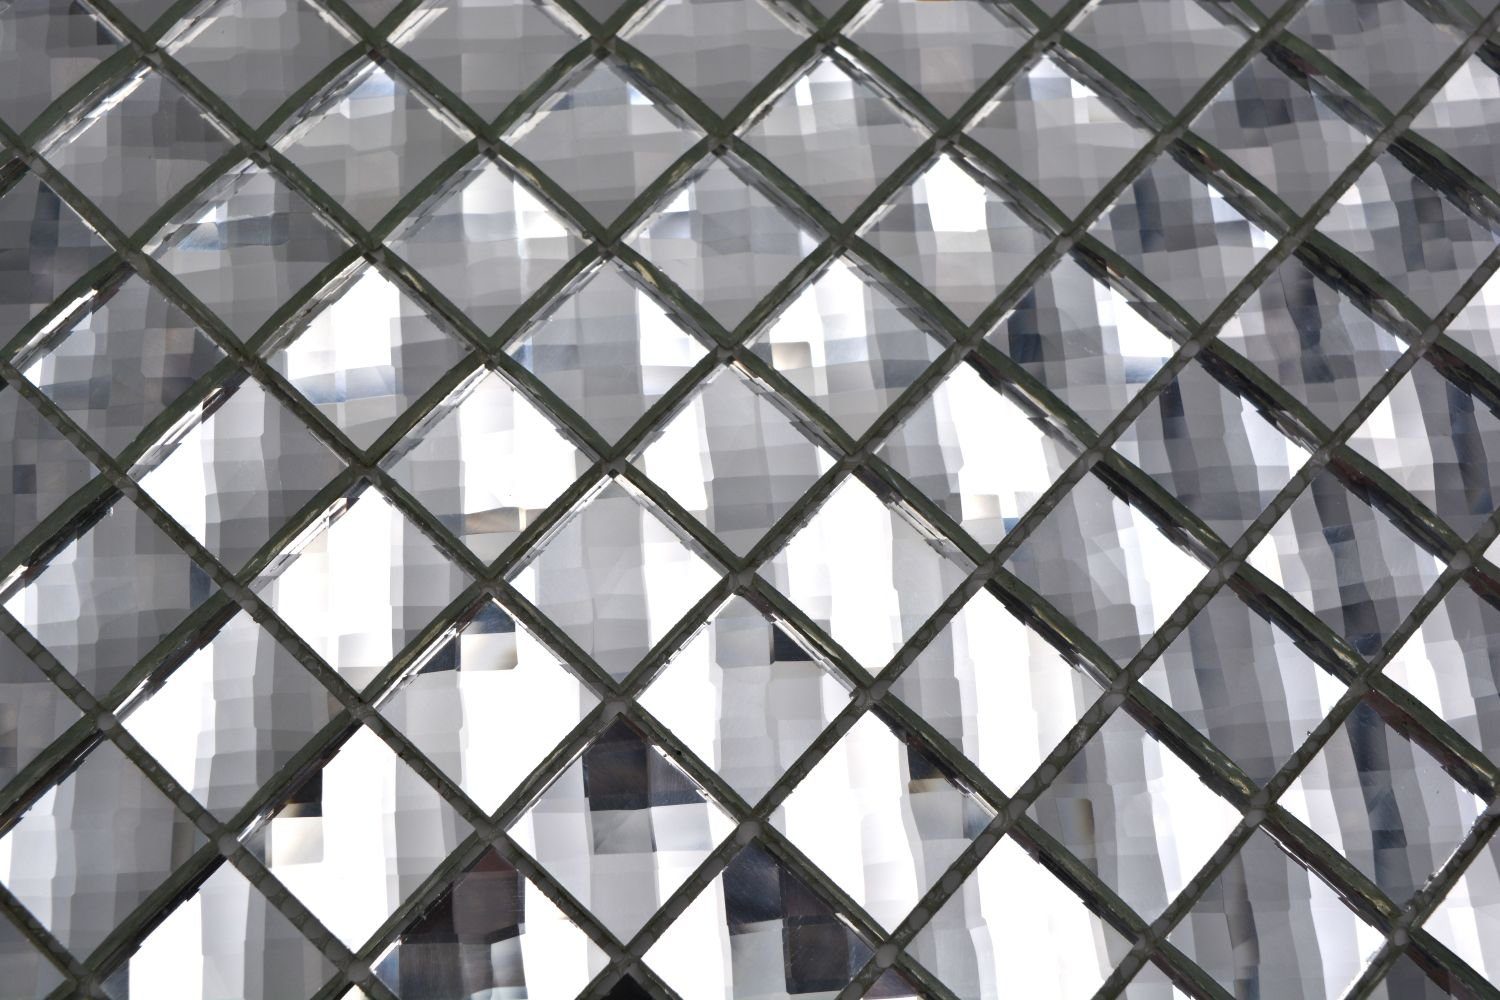 Mosani Mosaikfliesen Glasmosaik Crystal kristall 10 Matten / Mosaikfliesen glänzend